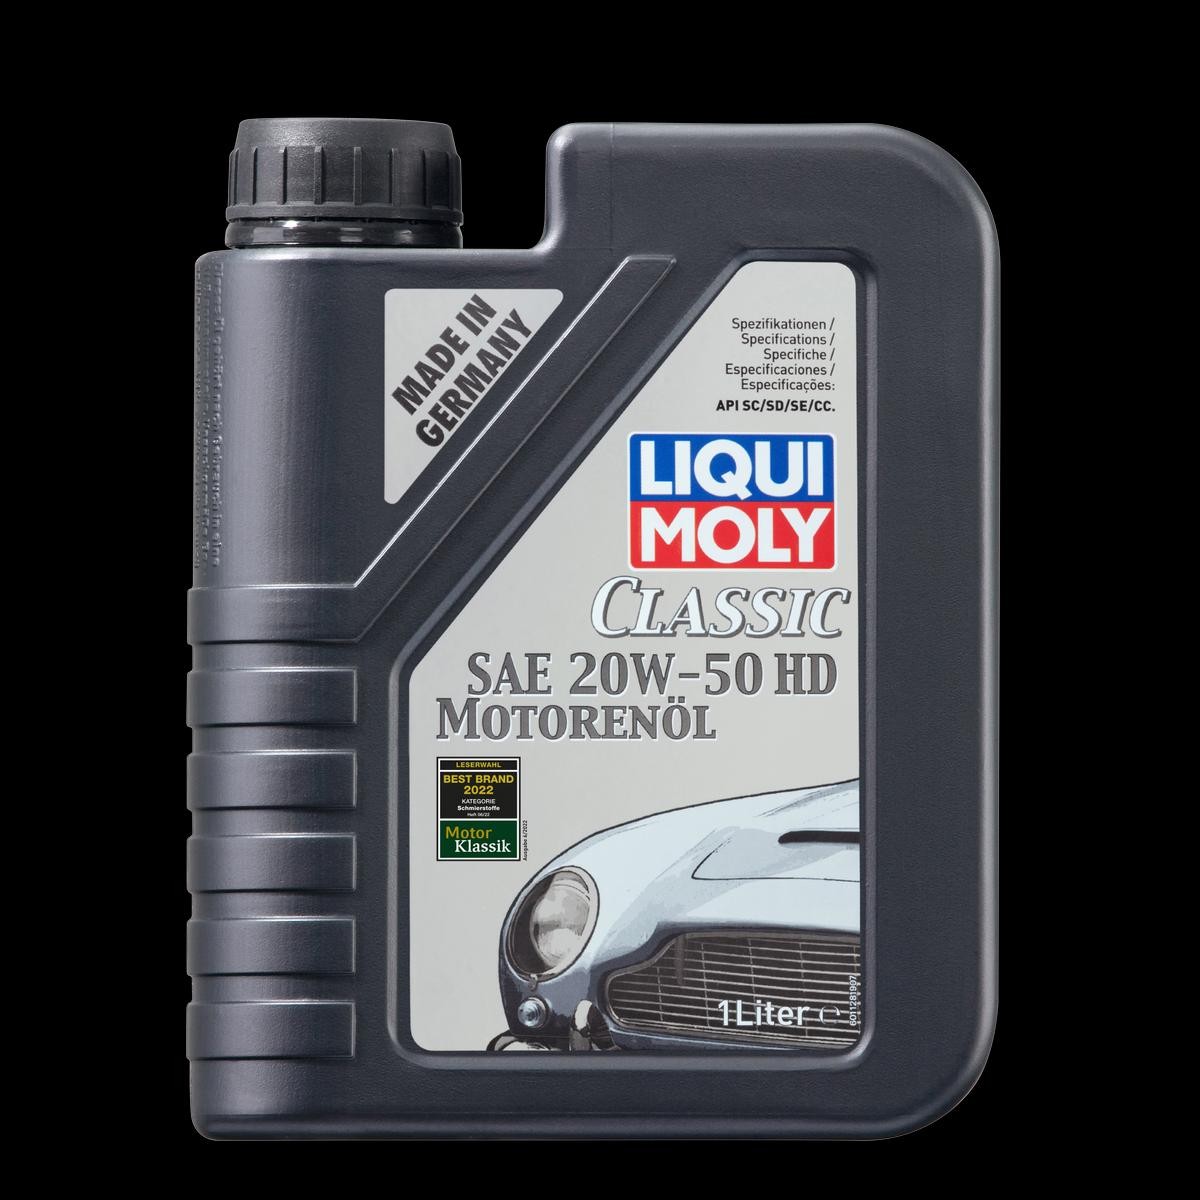 Engine oil 1128 LIQUI MOLY Classic Motoroil HD 20W-50, 1l, Mineral Oil